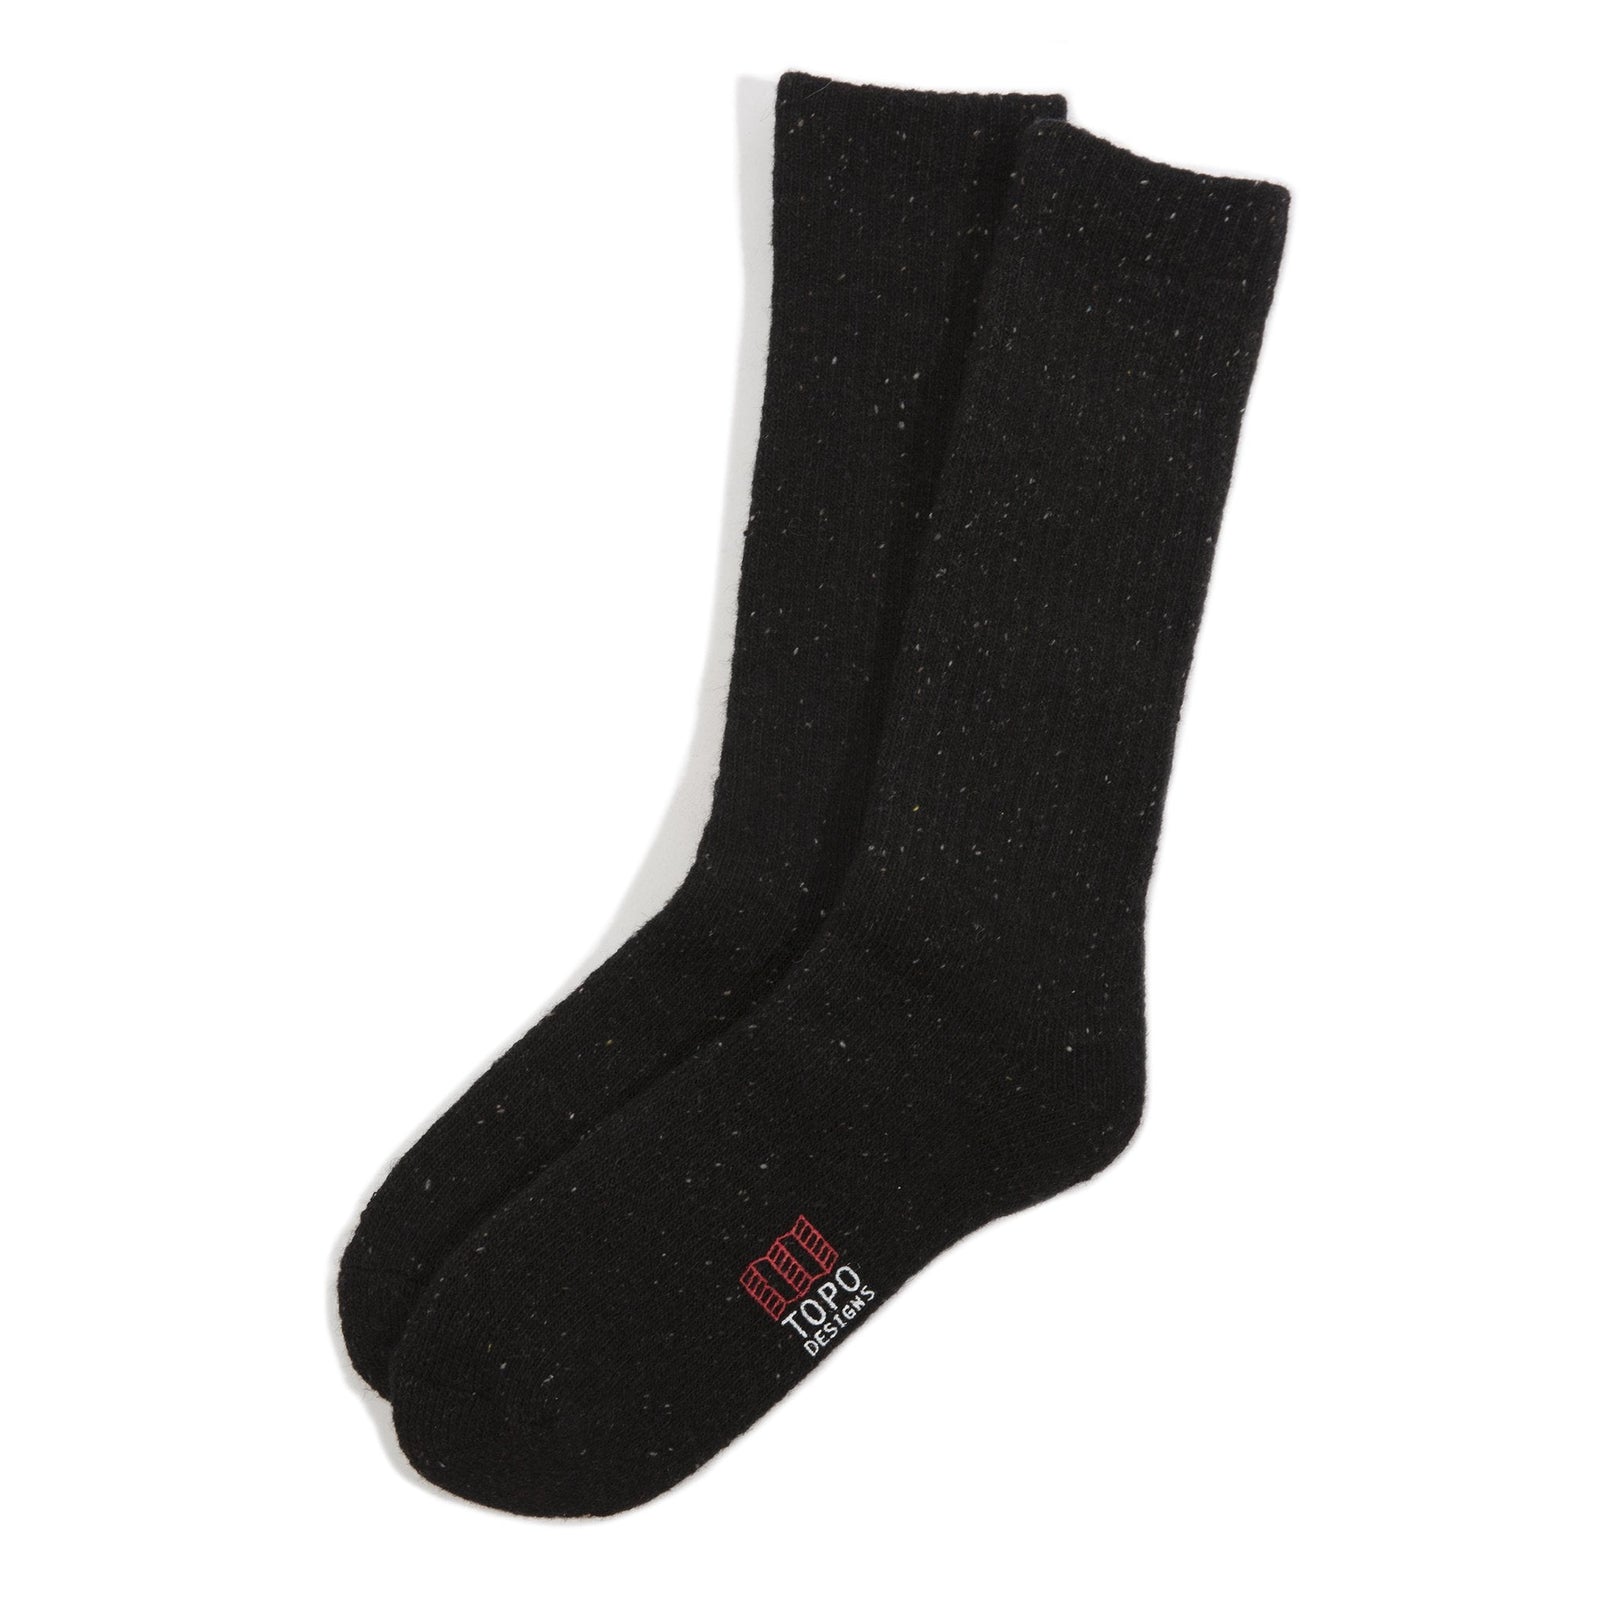 Topo Designs Mountain Socks in "Black".